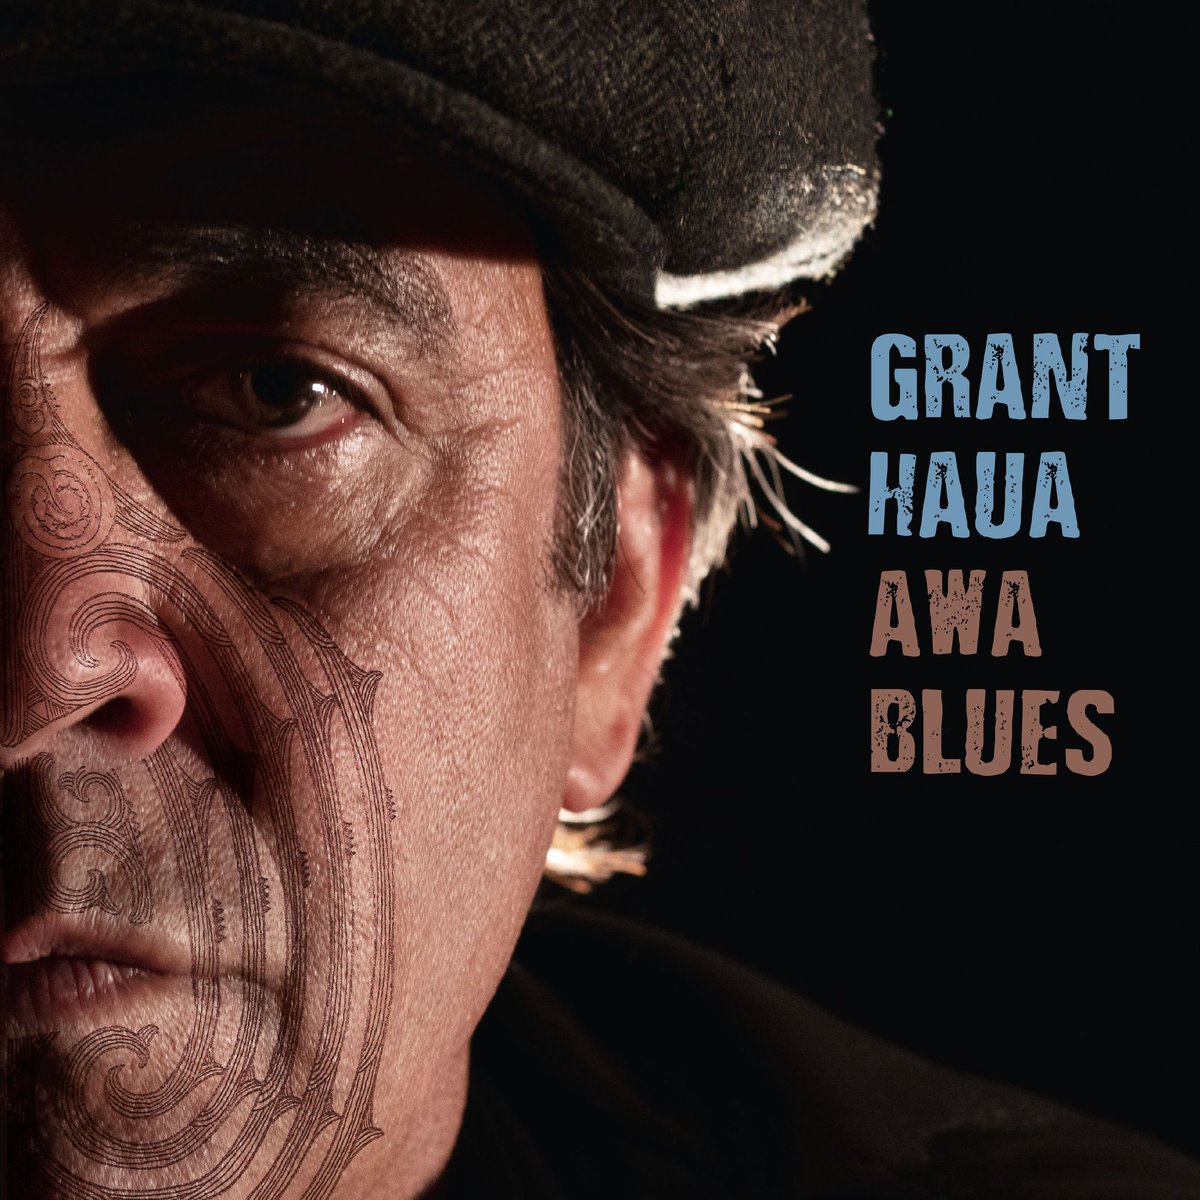 #musique Le #Blues est bien vivant et moderne. La preuve avec la découverte #AwaBlues de #GrantHaua et le prochain et impeccable #PopaChubby @Popachubb @sophielouvet9
bit.ly/3aKPUia